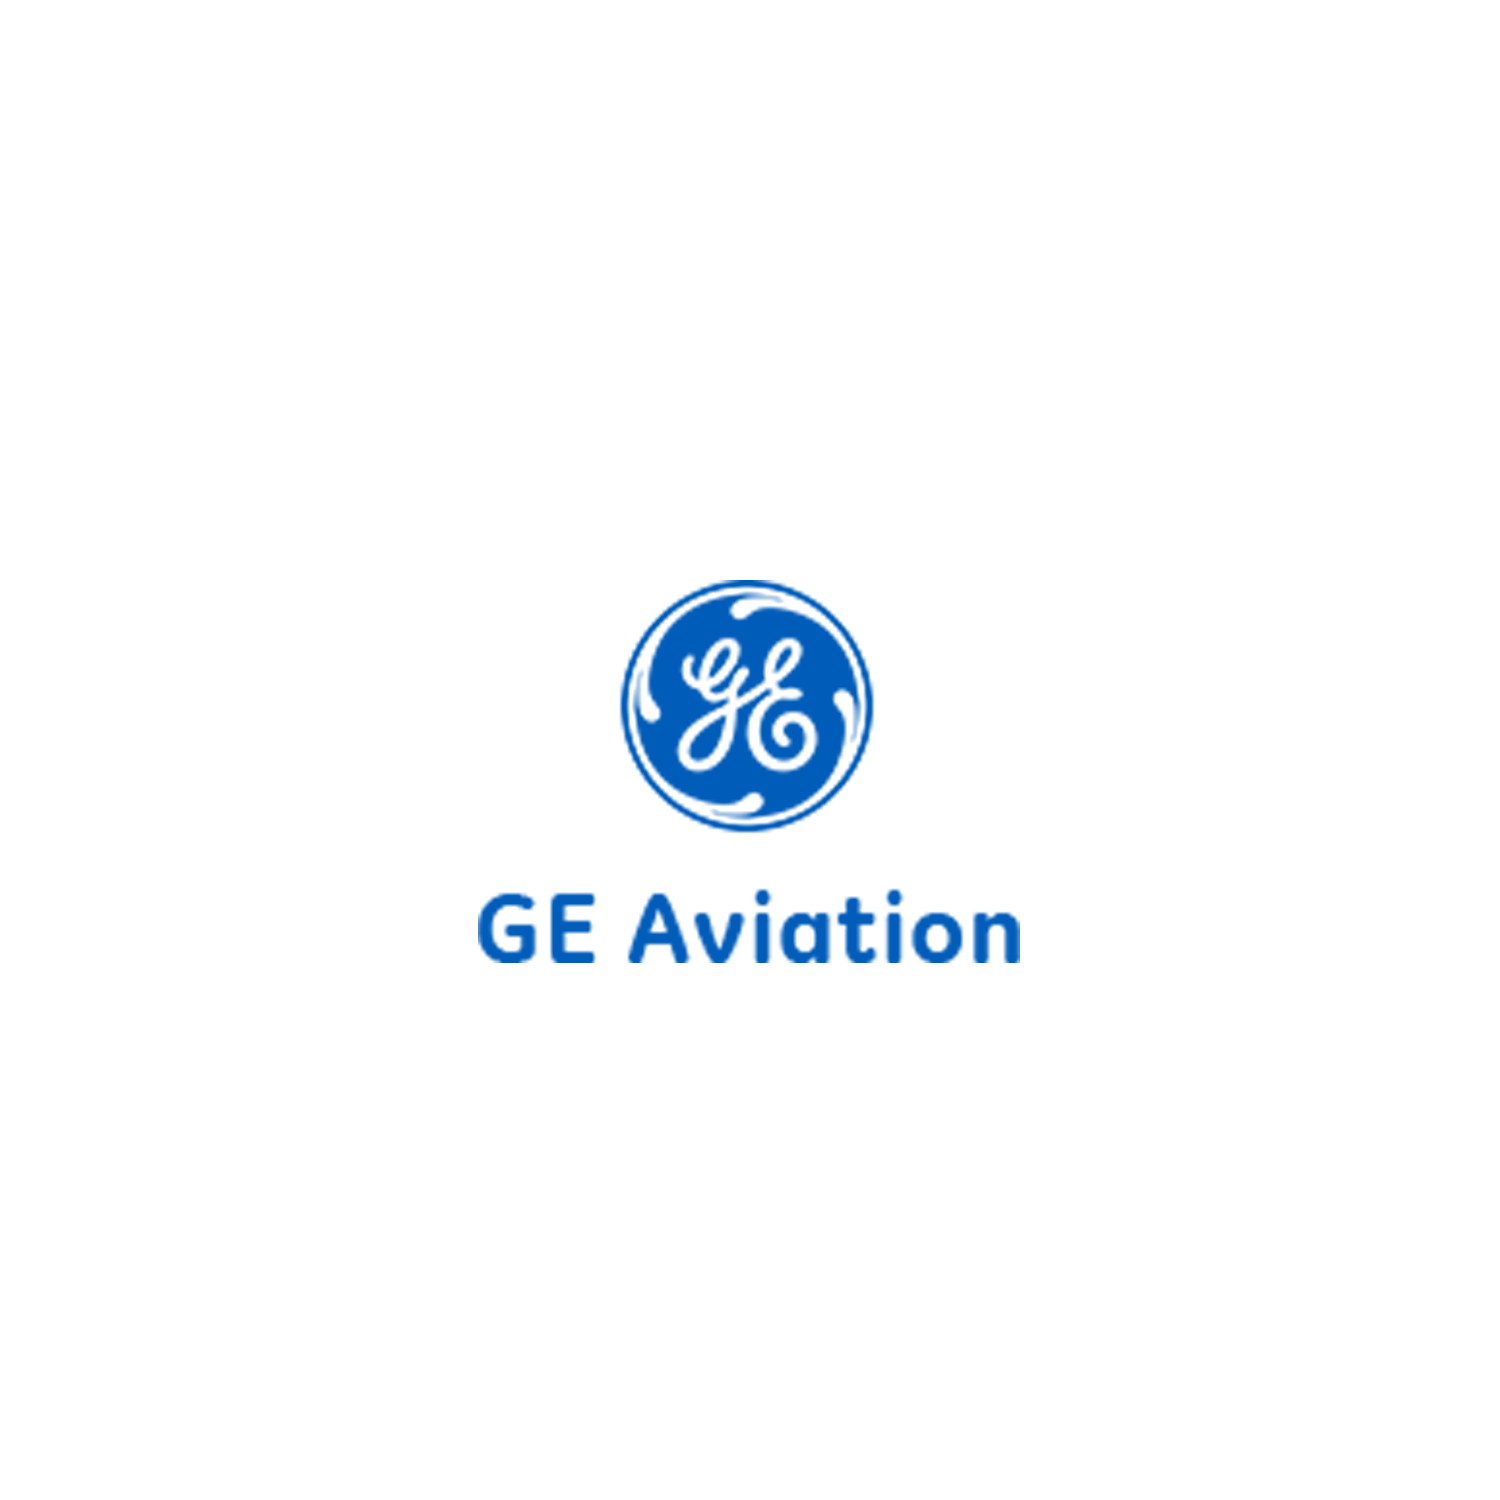 GE Aviation Logo - Ge aviation Logos